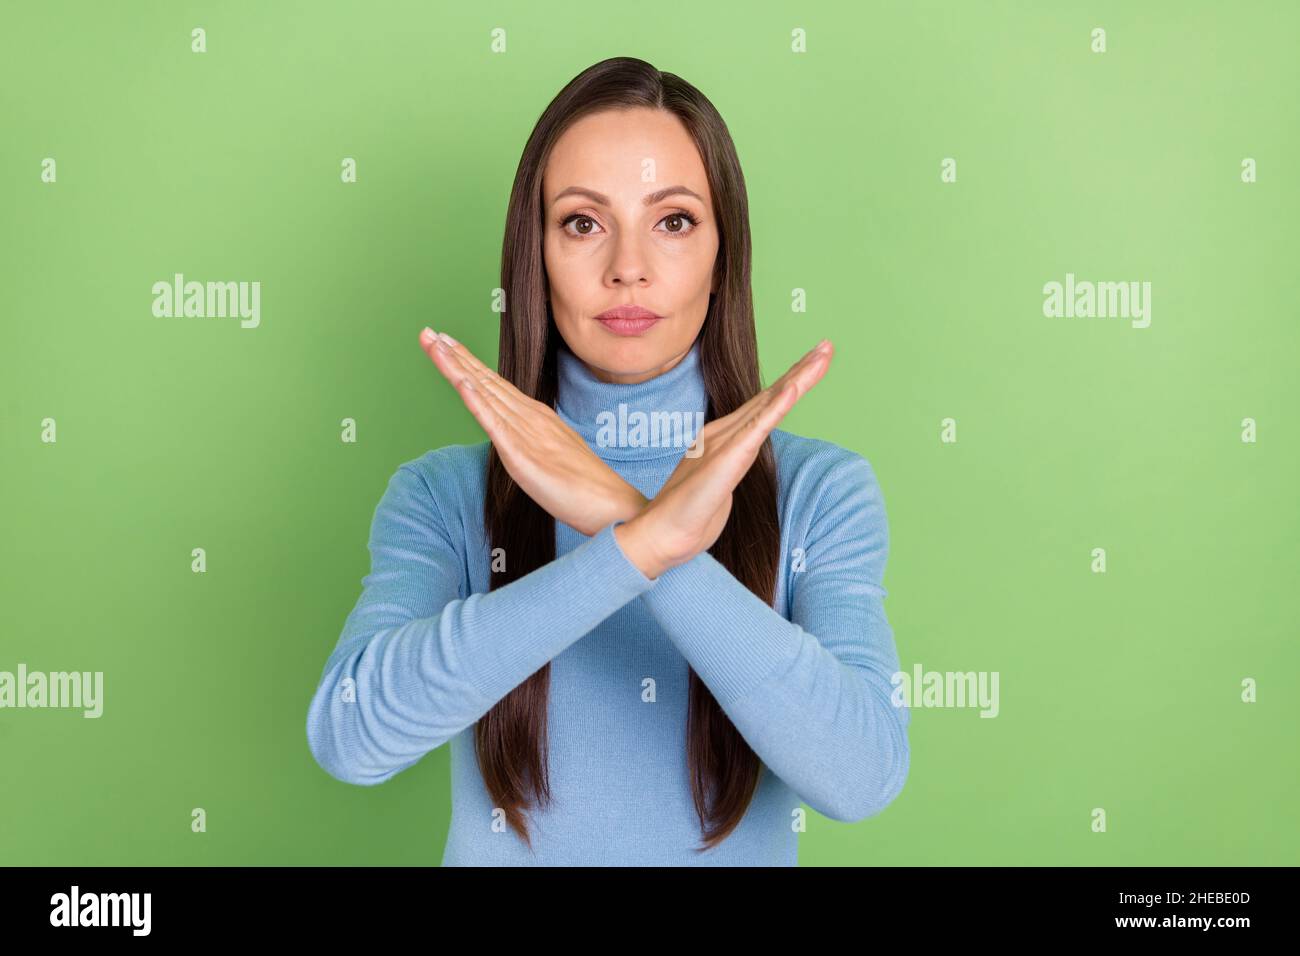 Portrait von attraktiven strengen langhaarigen Mädchen zeigt gekreuzte Hände Stopp-Zeichen isoliert über hellen grünen Hintergrund Stockfoto